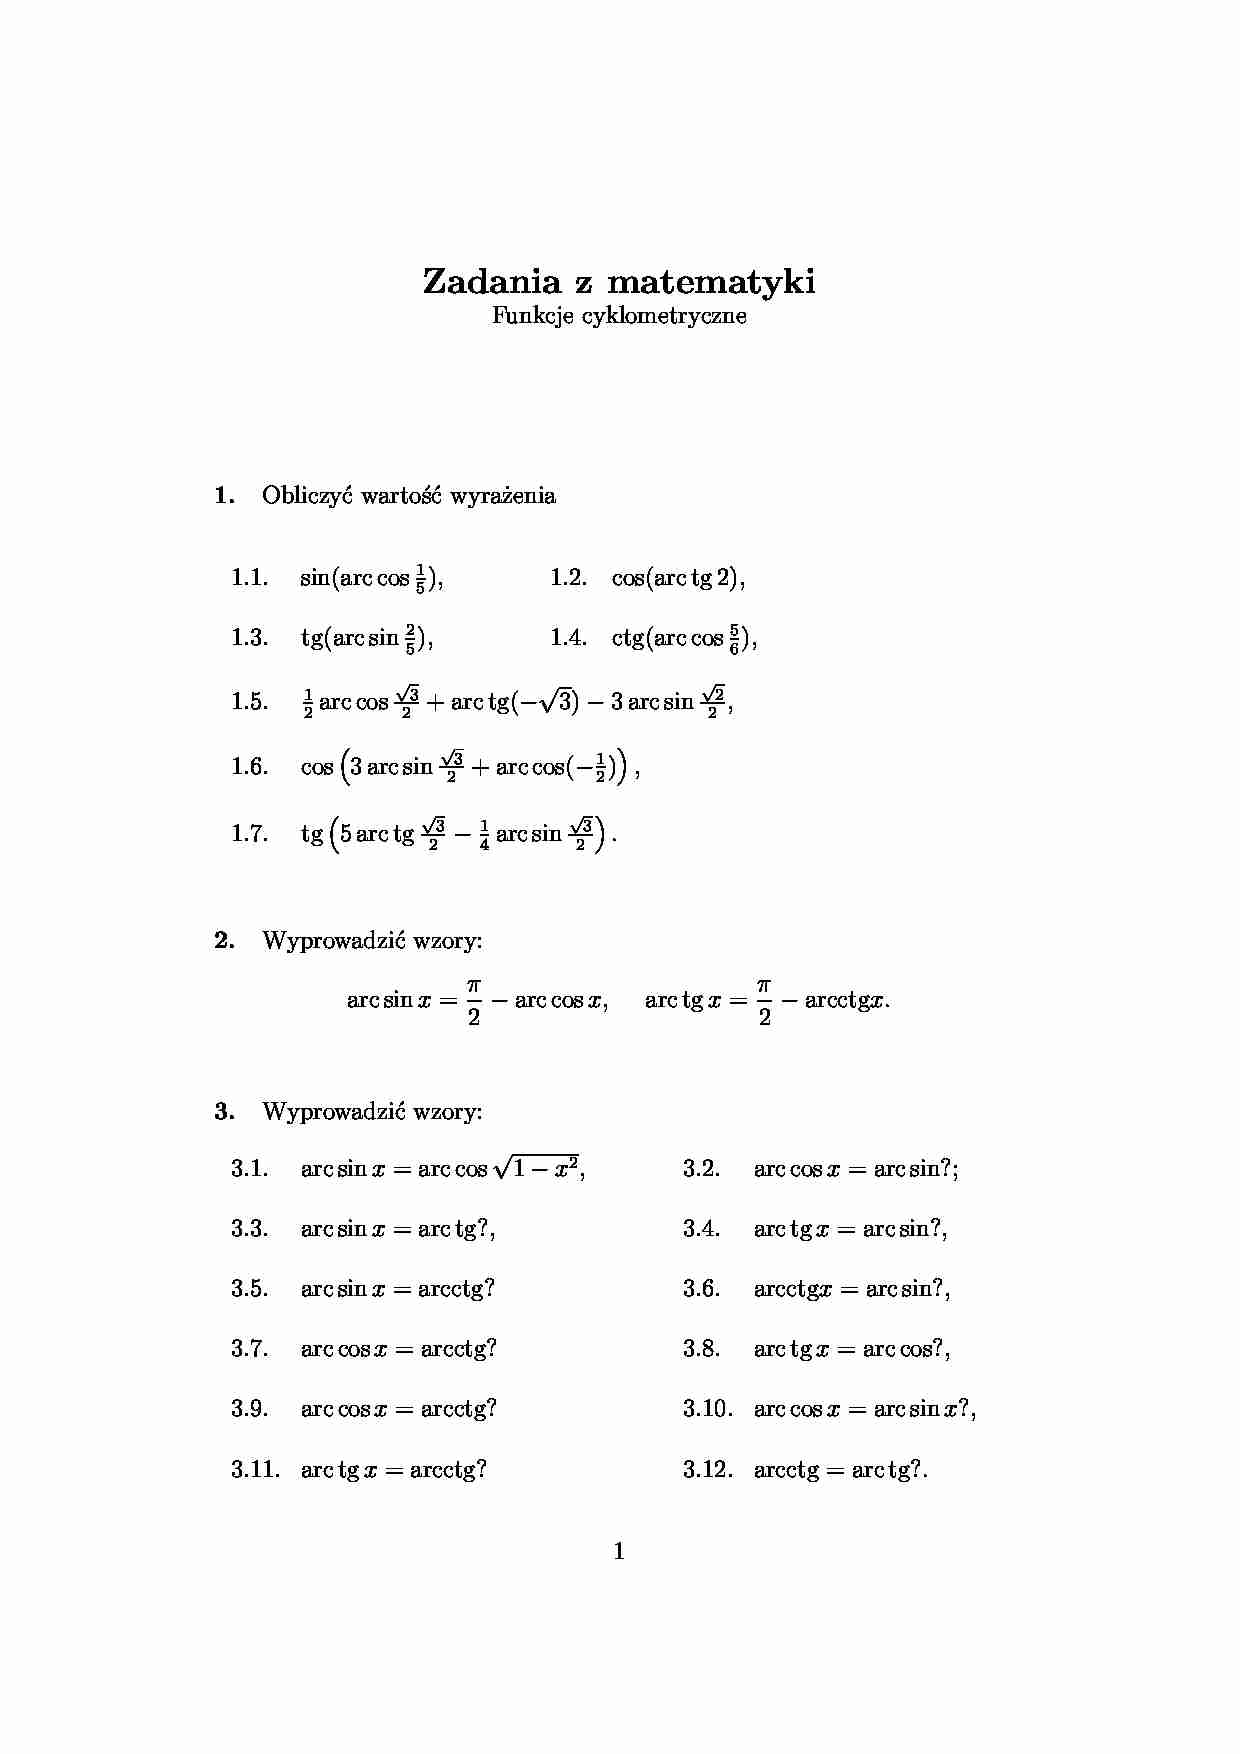 Funkcje cyklometryczne - wykład - strona 1